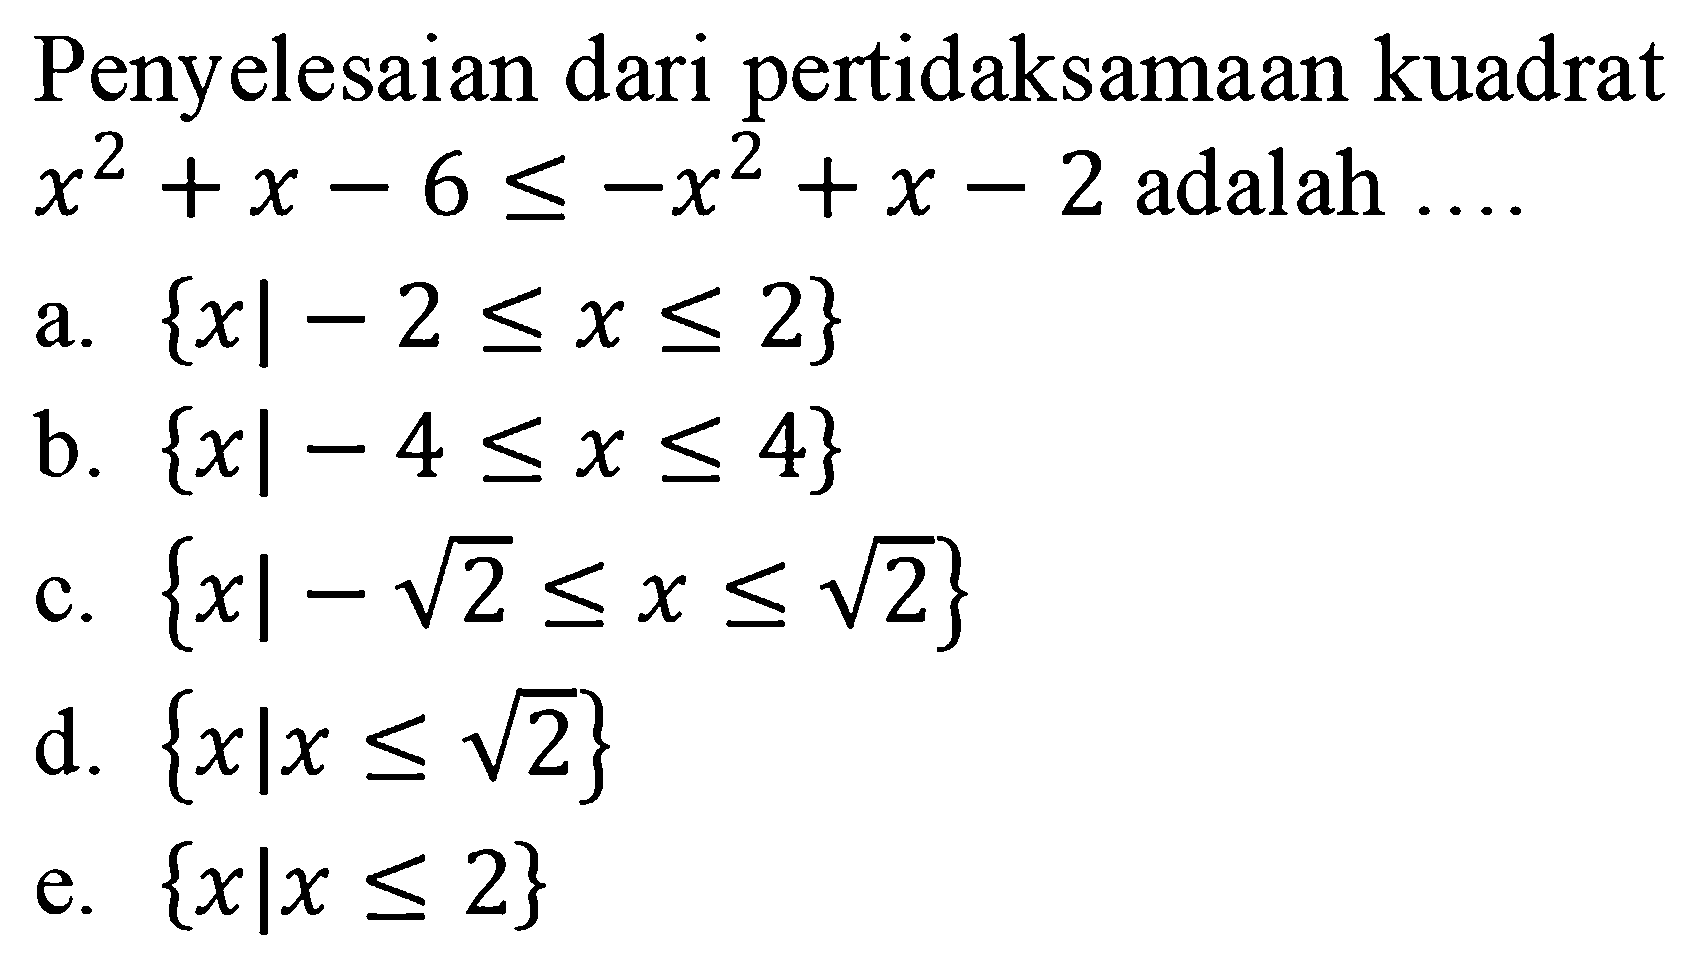 Penyelesaian dari pertidaksamaan kuadrat x^2 + x -6 < =-x^2 + x -2 adalah a.{x| - 2= <x <=2} b. {xl -4 <=x <=4} C. {x| - 2^(1/2) <=x <=2^(1/2)} d. {xlx <= 2^(1/2)} e.{xlx <= 2}